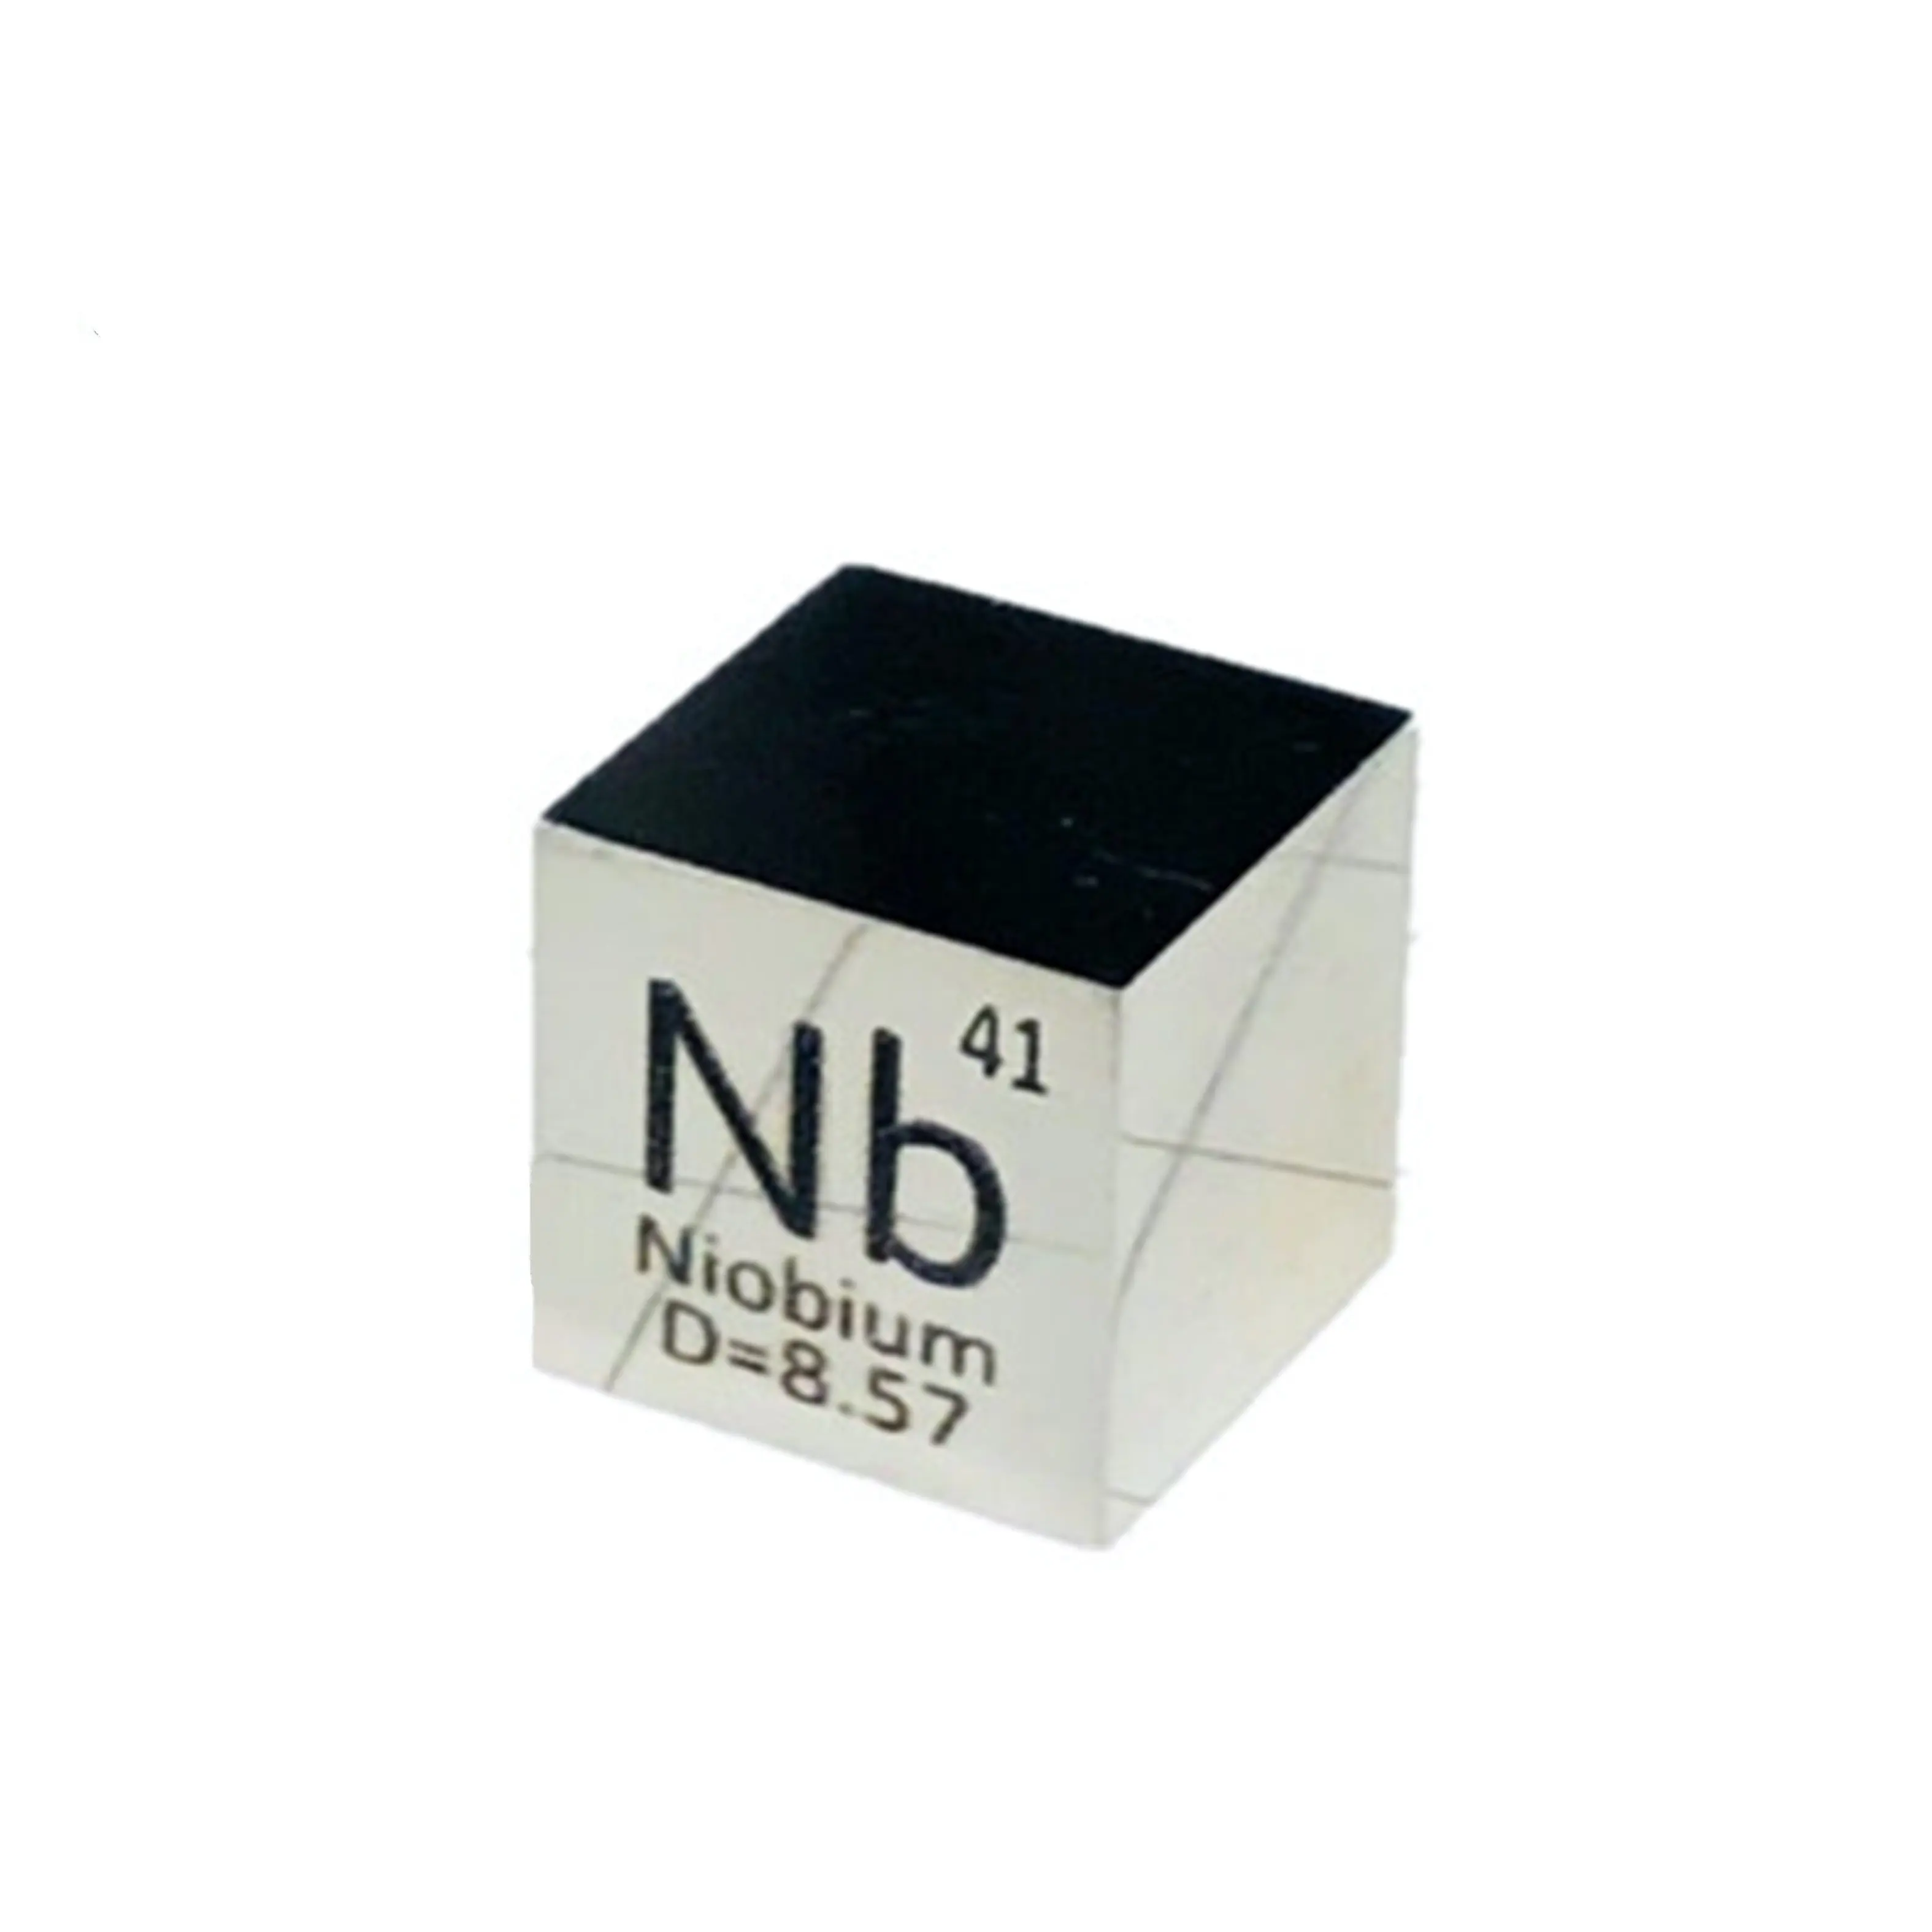 Cubo Nb niobio lucidato a specchio formato tavola periodica da 1 pollice elevata purezza 99.9%